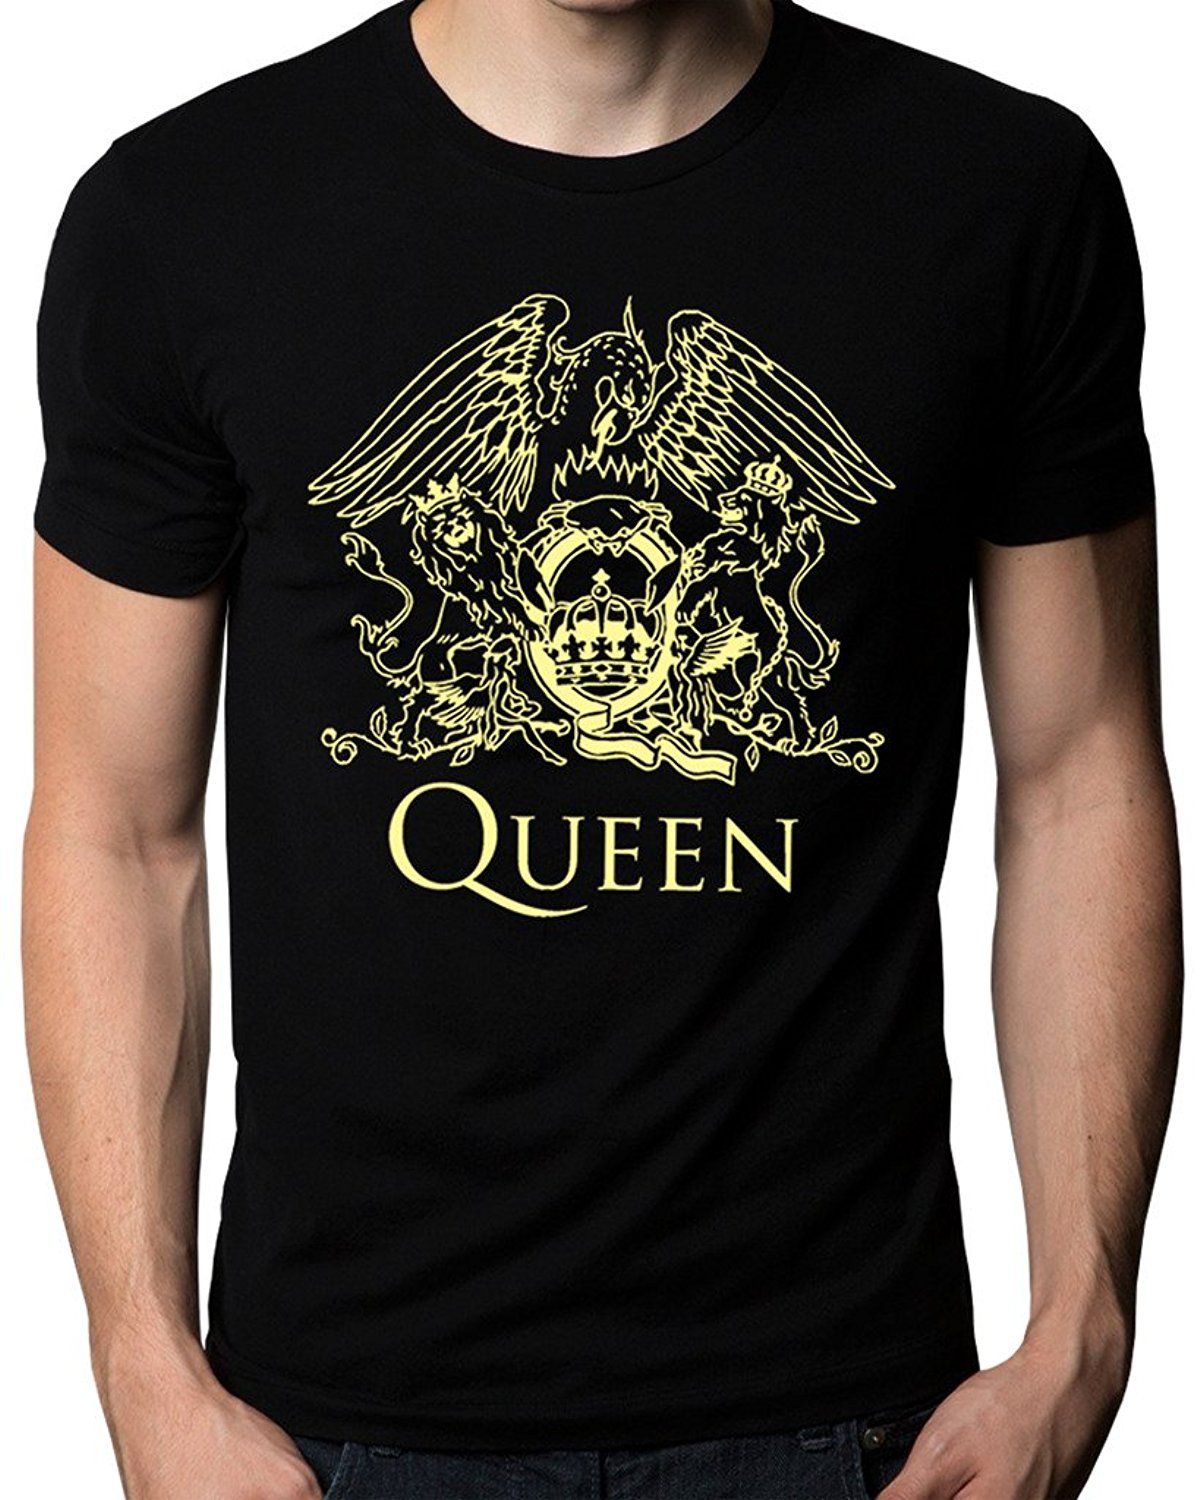 Queen Band Rock Music Logo Camiseta De Los Hombres De La Venta Caliente De Los Hombres Camiseta De La Manera Camisetas Impresión De Manga Corta O Cuello Hombres Baratos Calientes De